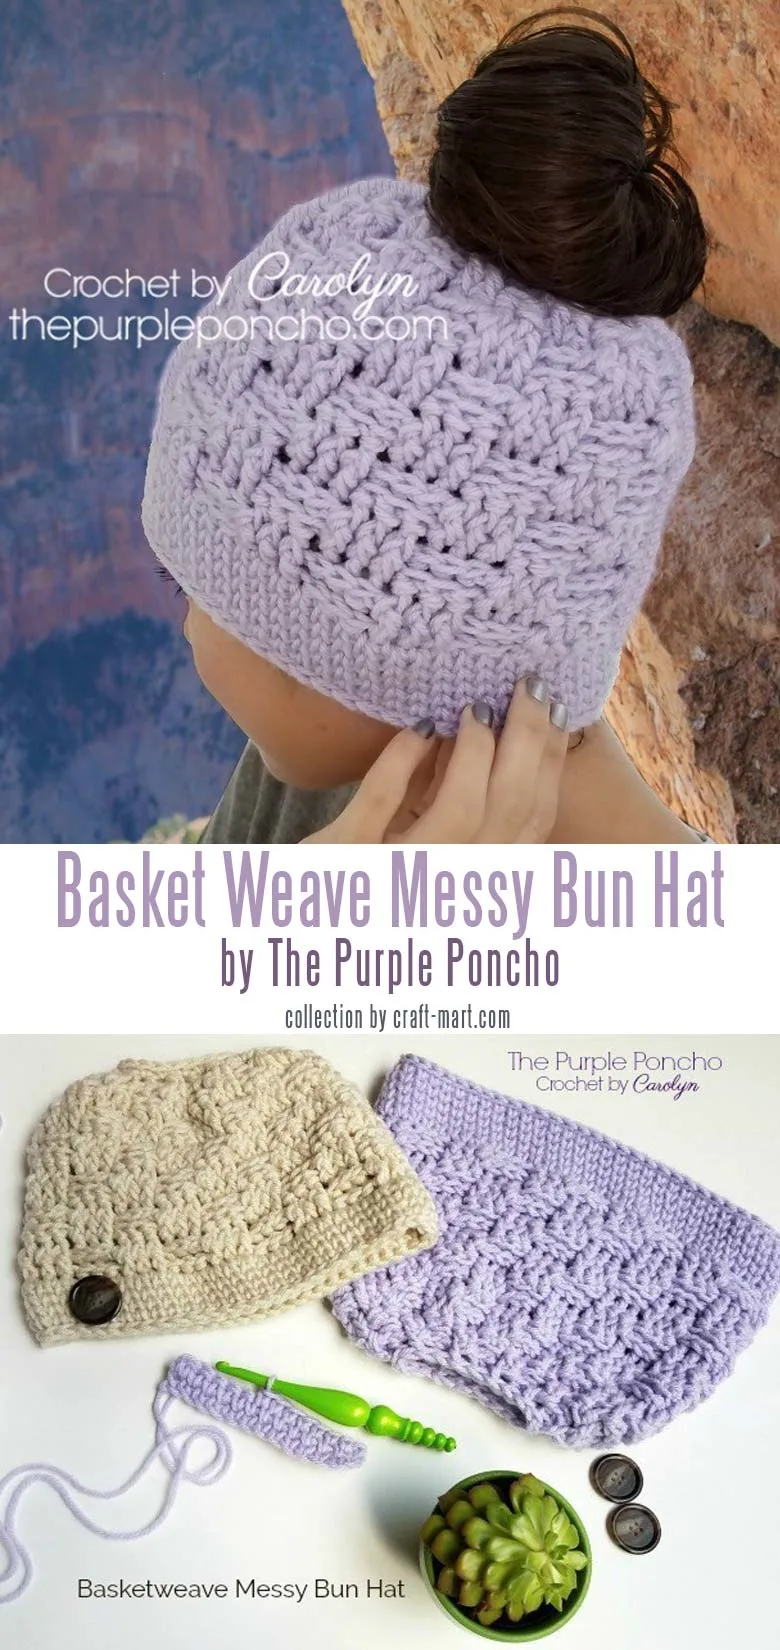 Basketweave Messy Bun Hat – Free Crochet Pattern by The Purple Poncho